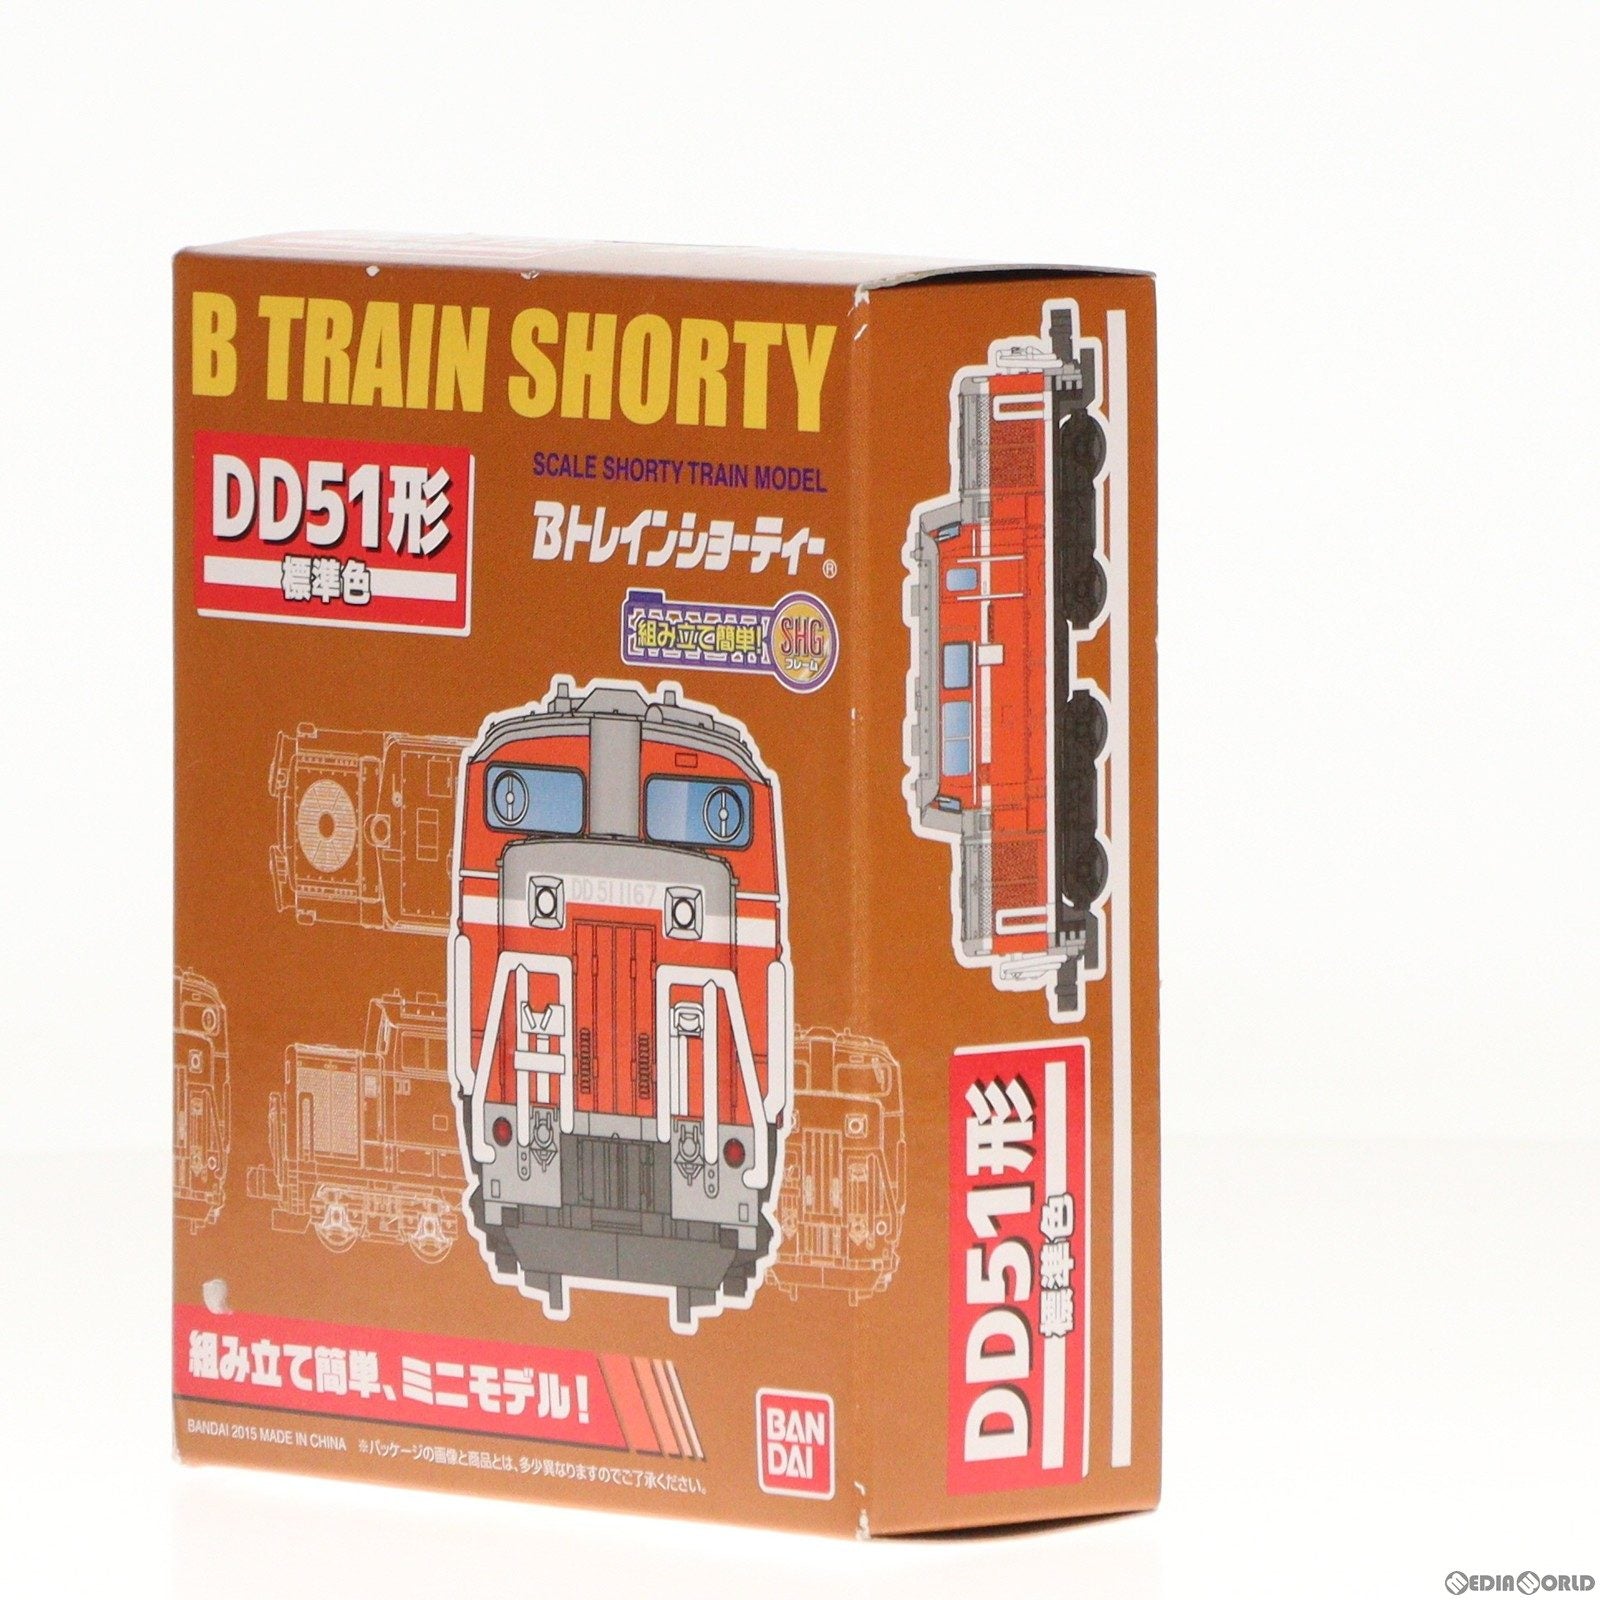 【中古即納】[RWM]963628 Bトレインショーティー DD51形 標準色 組み立てキット Nゲージ 鉄道模型(20150607)